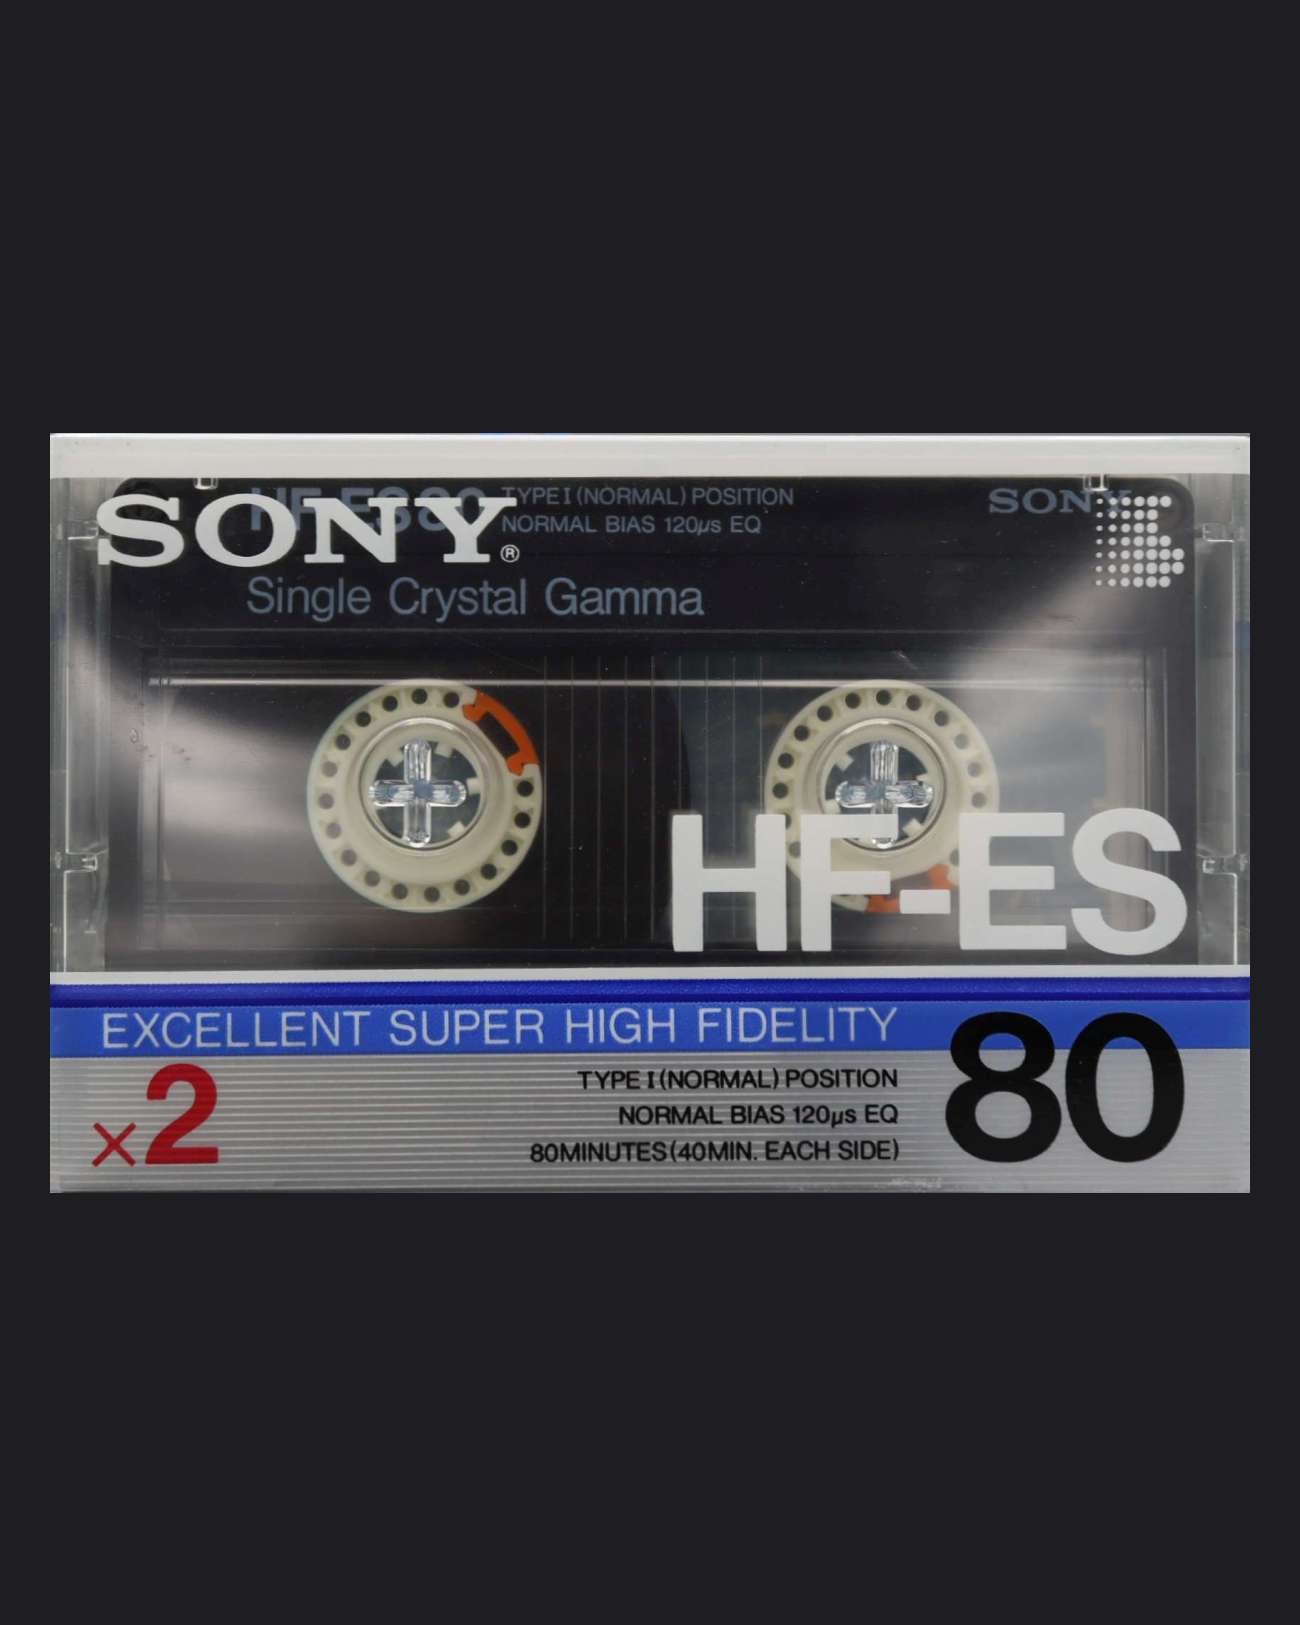 Sony HF-ES (1986-1987 JP)